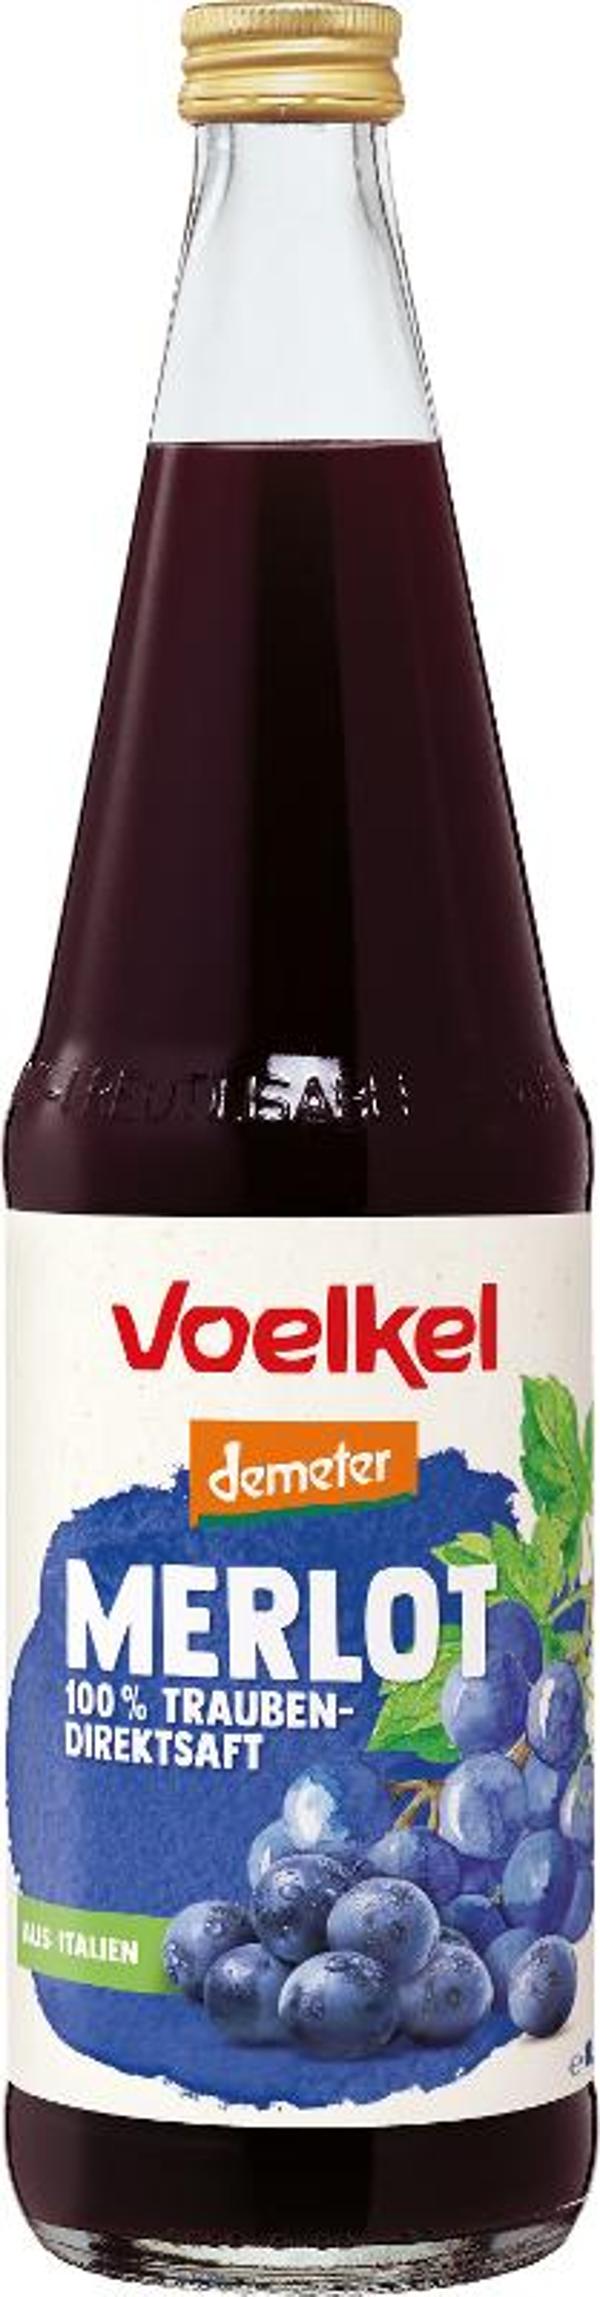 Produktfoto zu Traubensaft "Merlot"  rot 0,7 l Voelkel